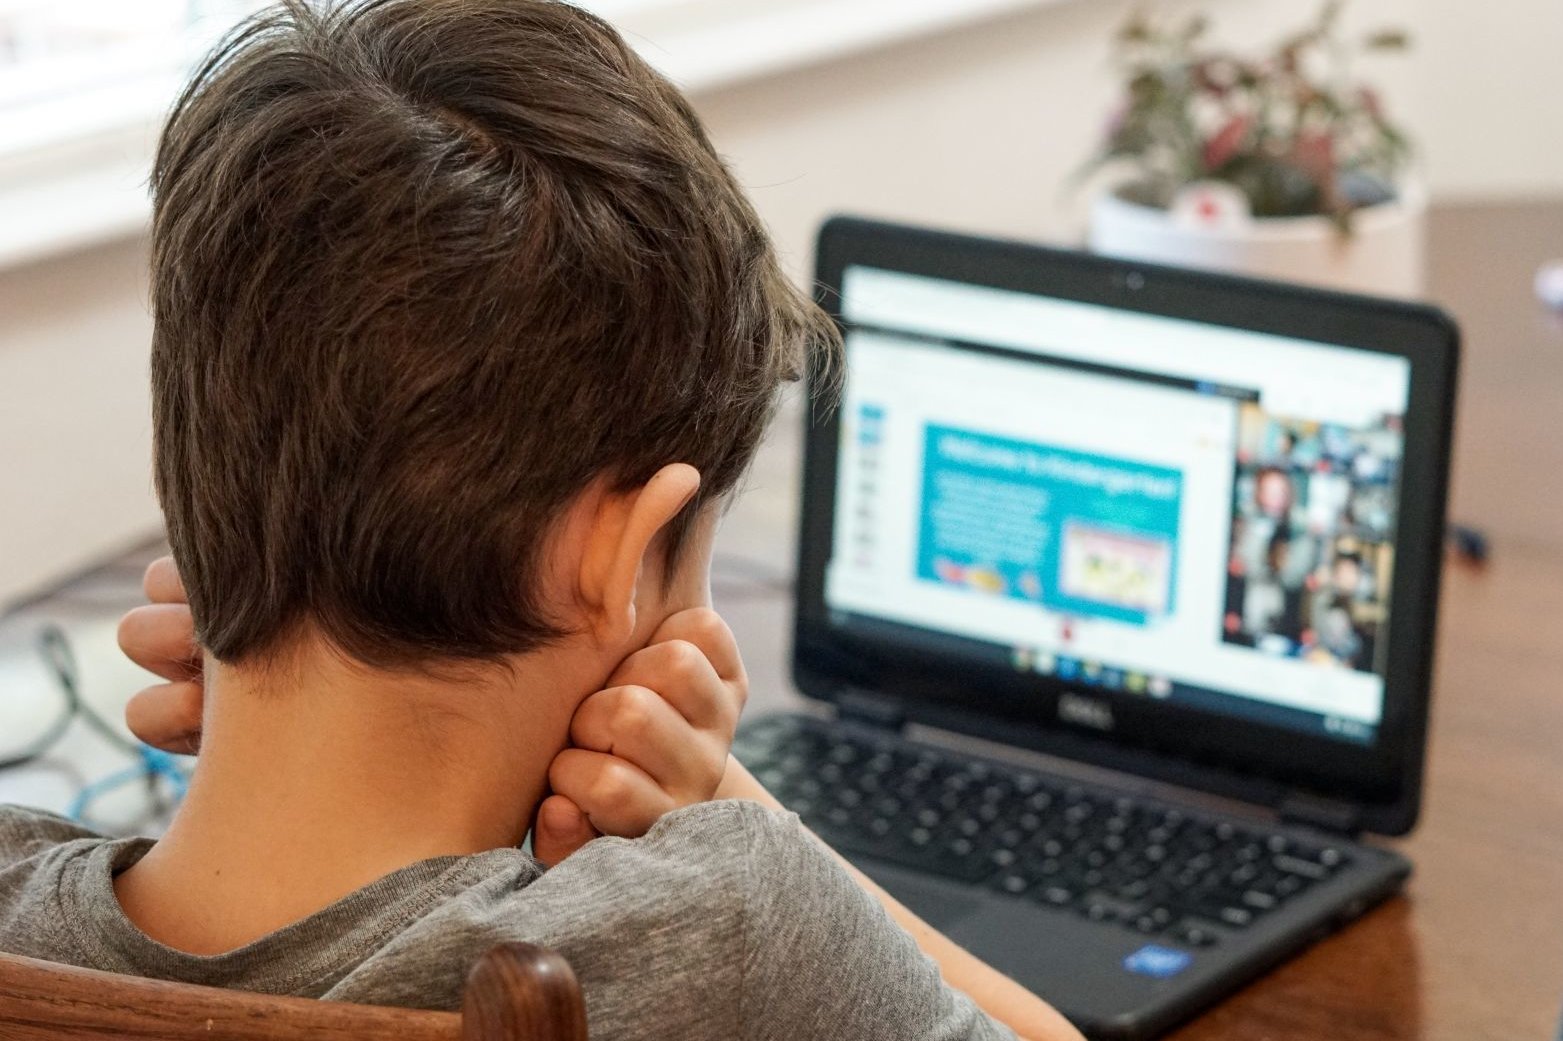 Ein Junge, von hinten zu sehen, schaut in den Bildschirm eines Laptops